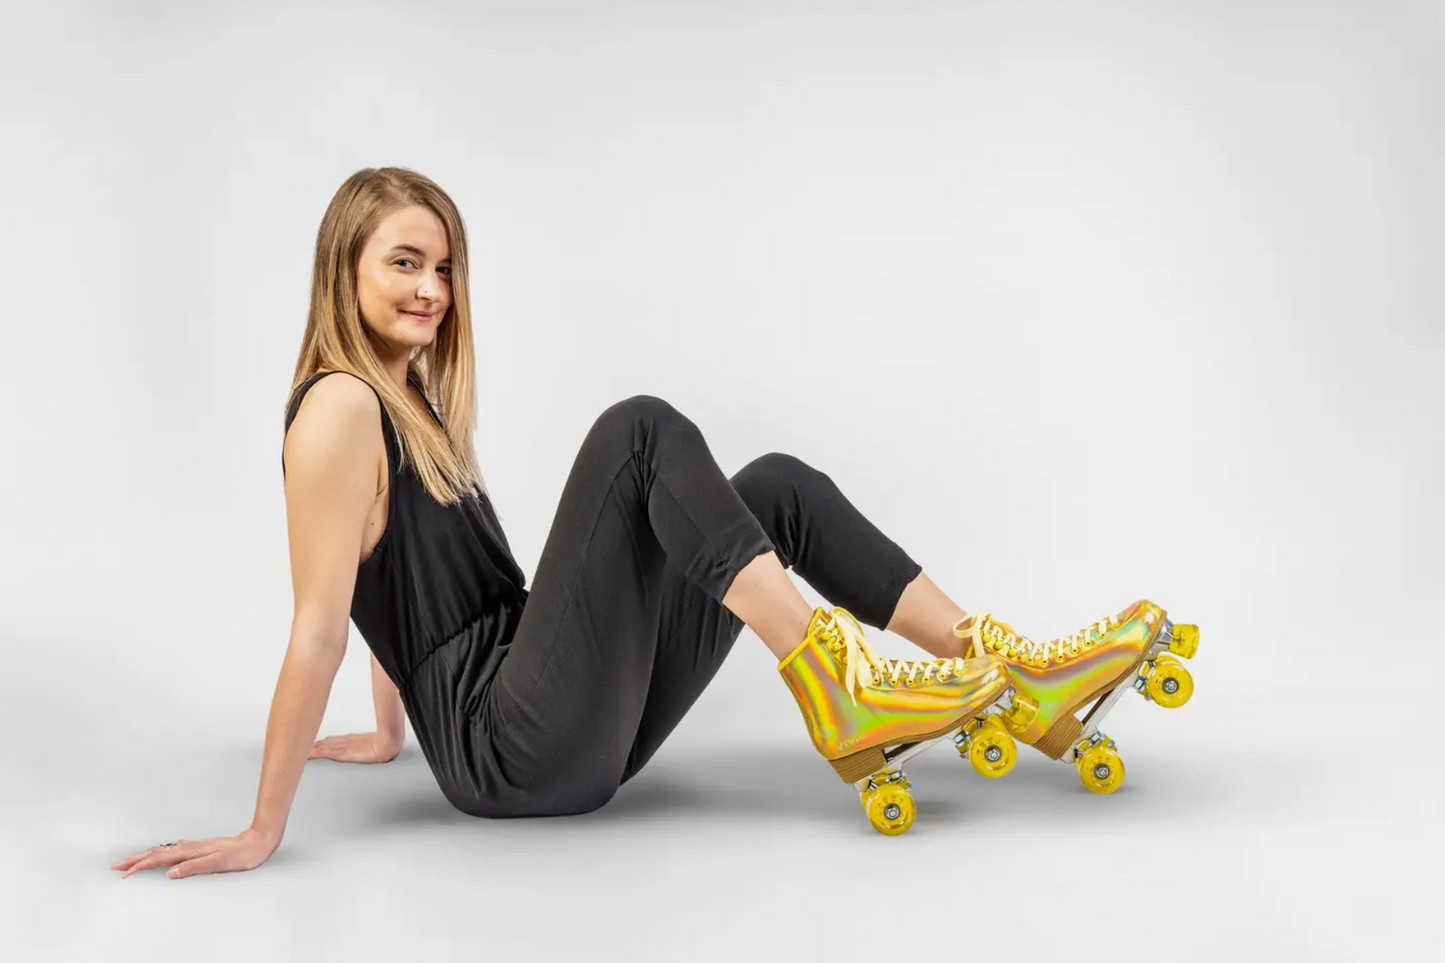 Gold Prisma Roller Skates